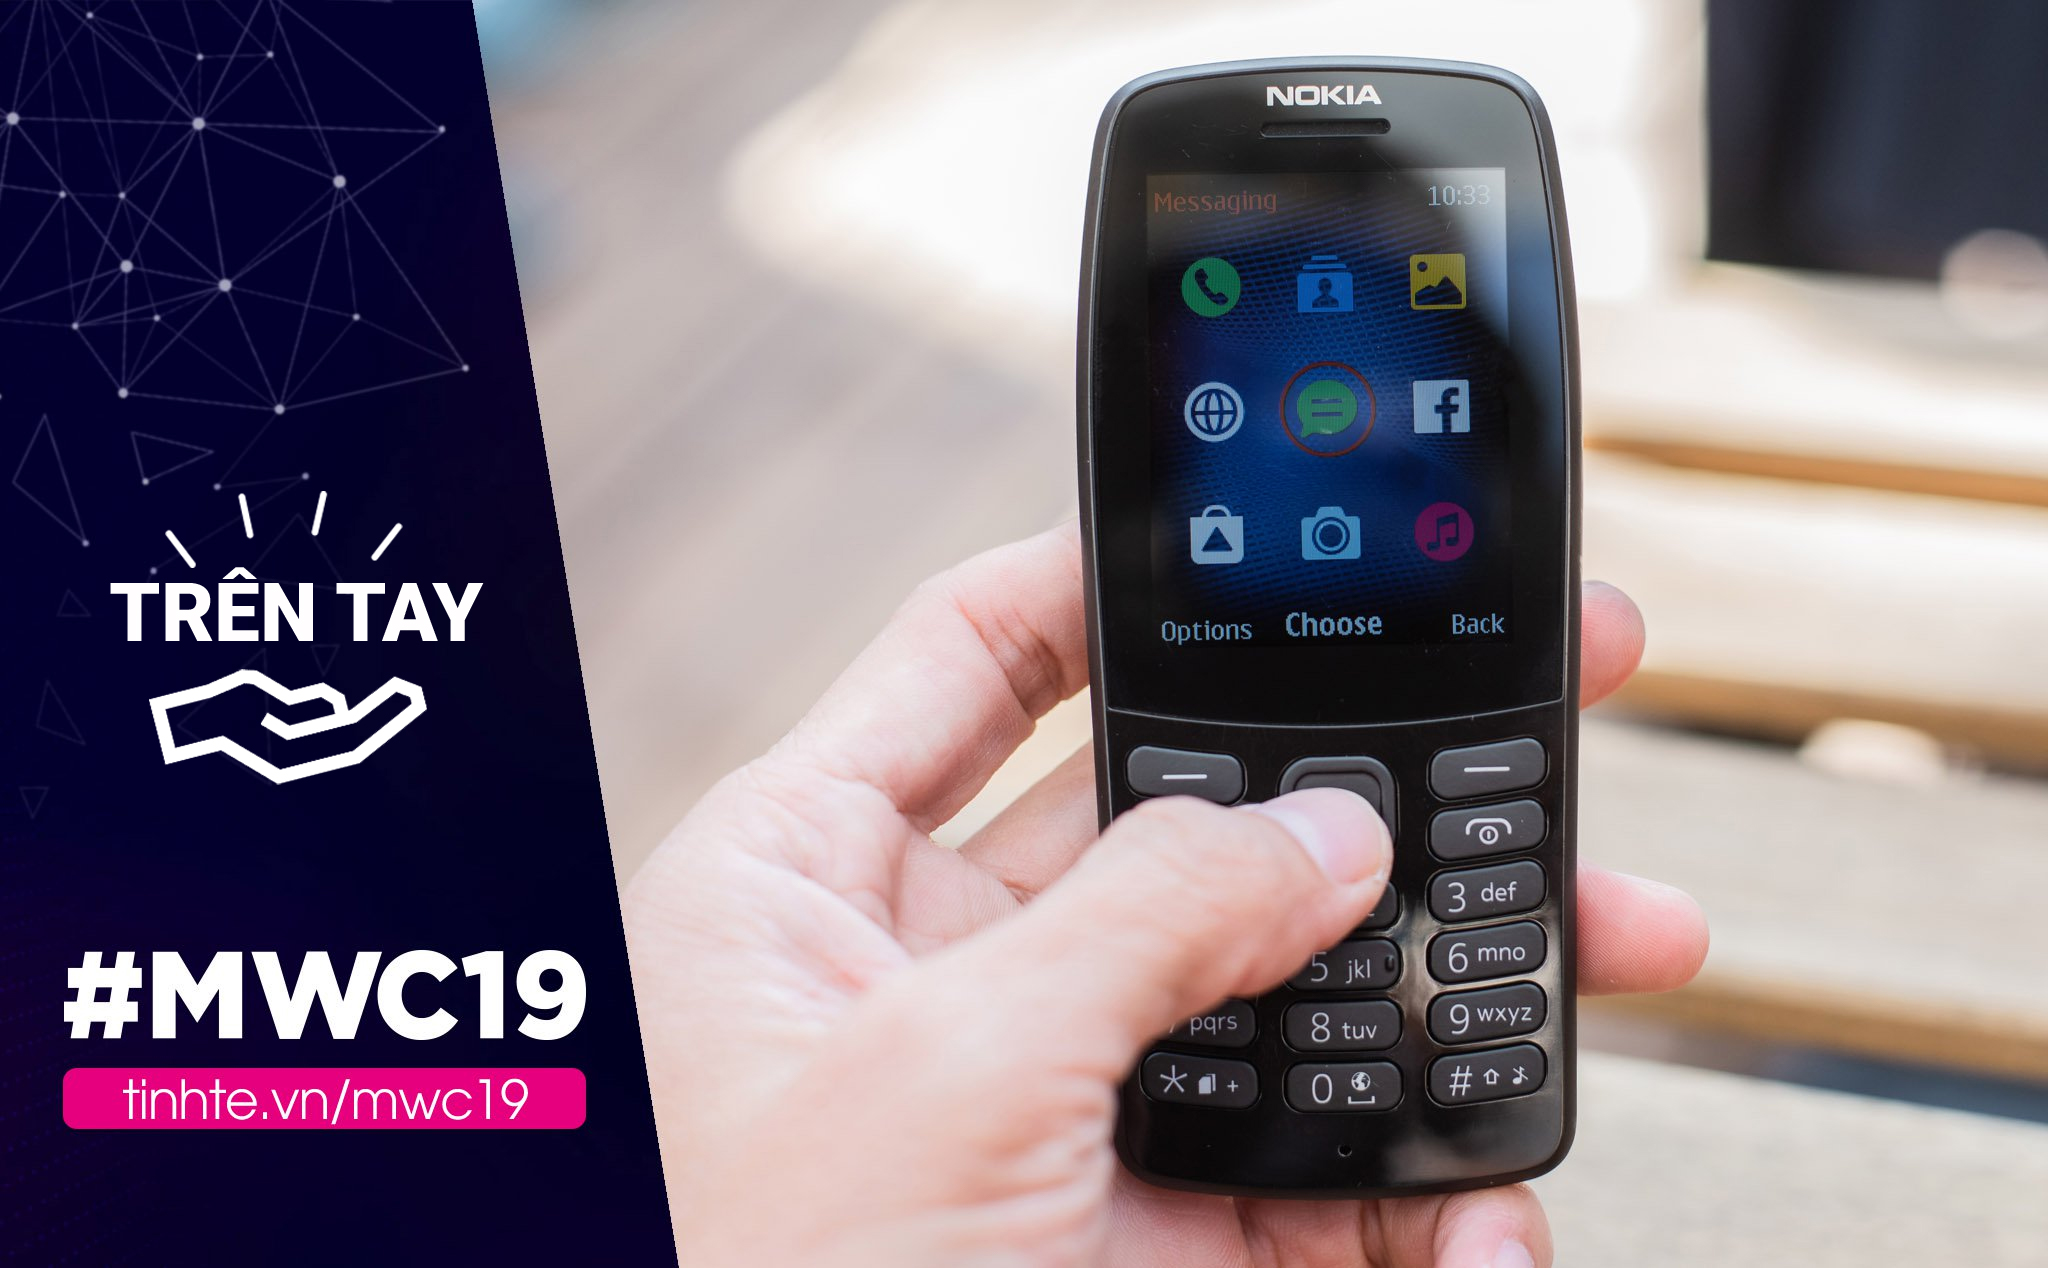 #MWC19: Trên tay Nokia 210